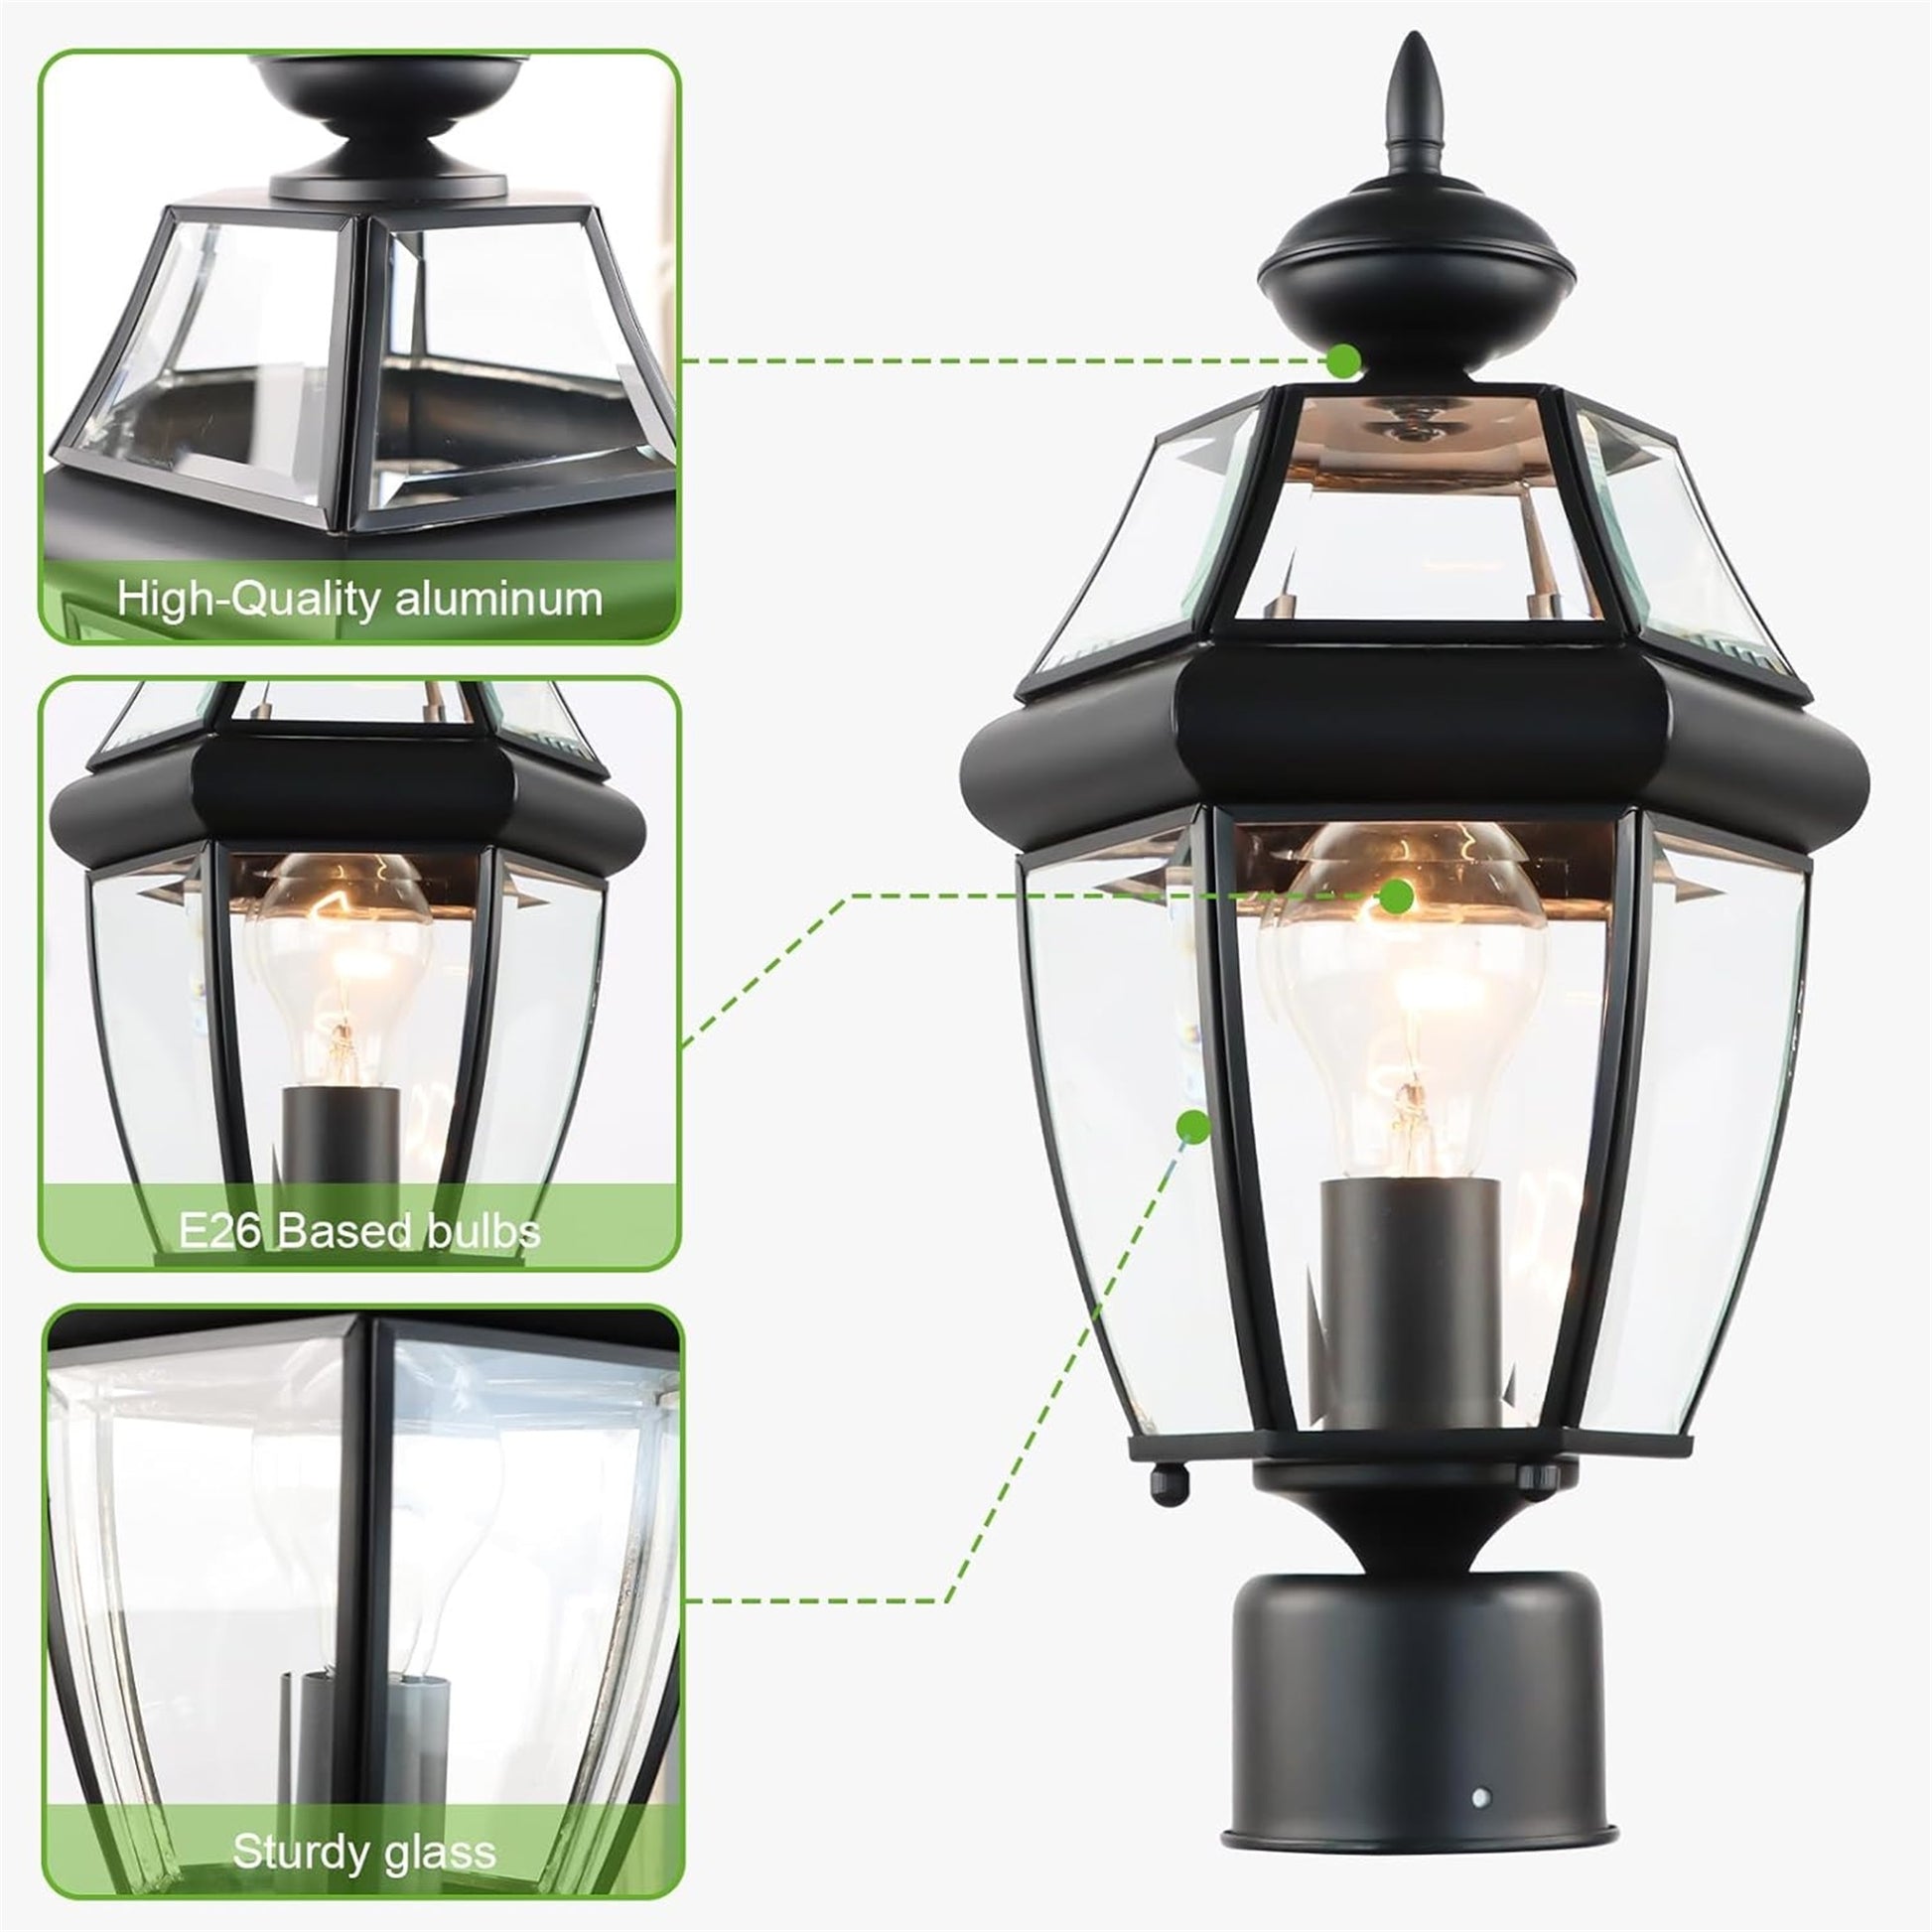 Outdoor 15" Lamp Post Light Fixture Waterproof -